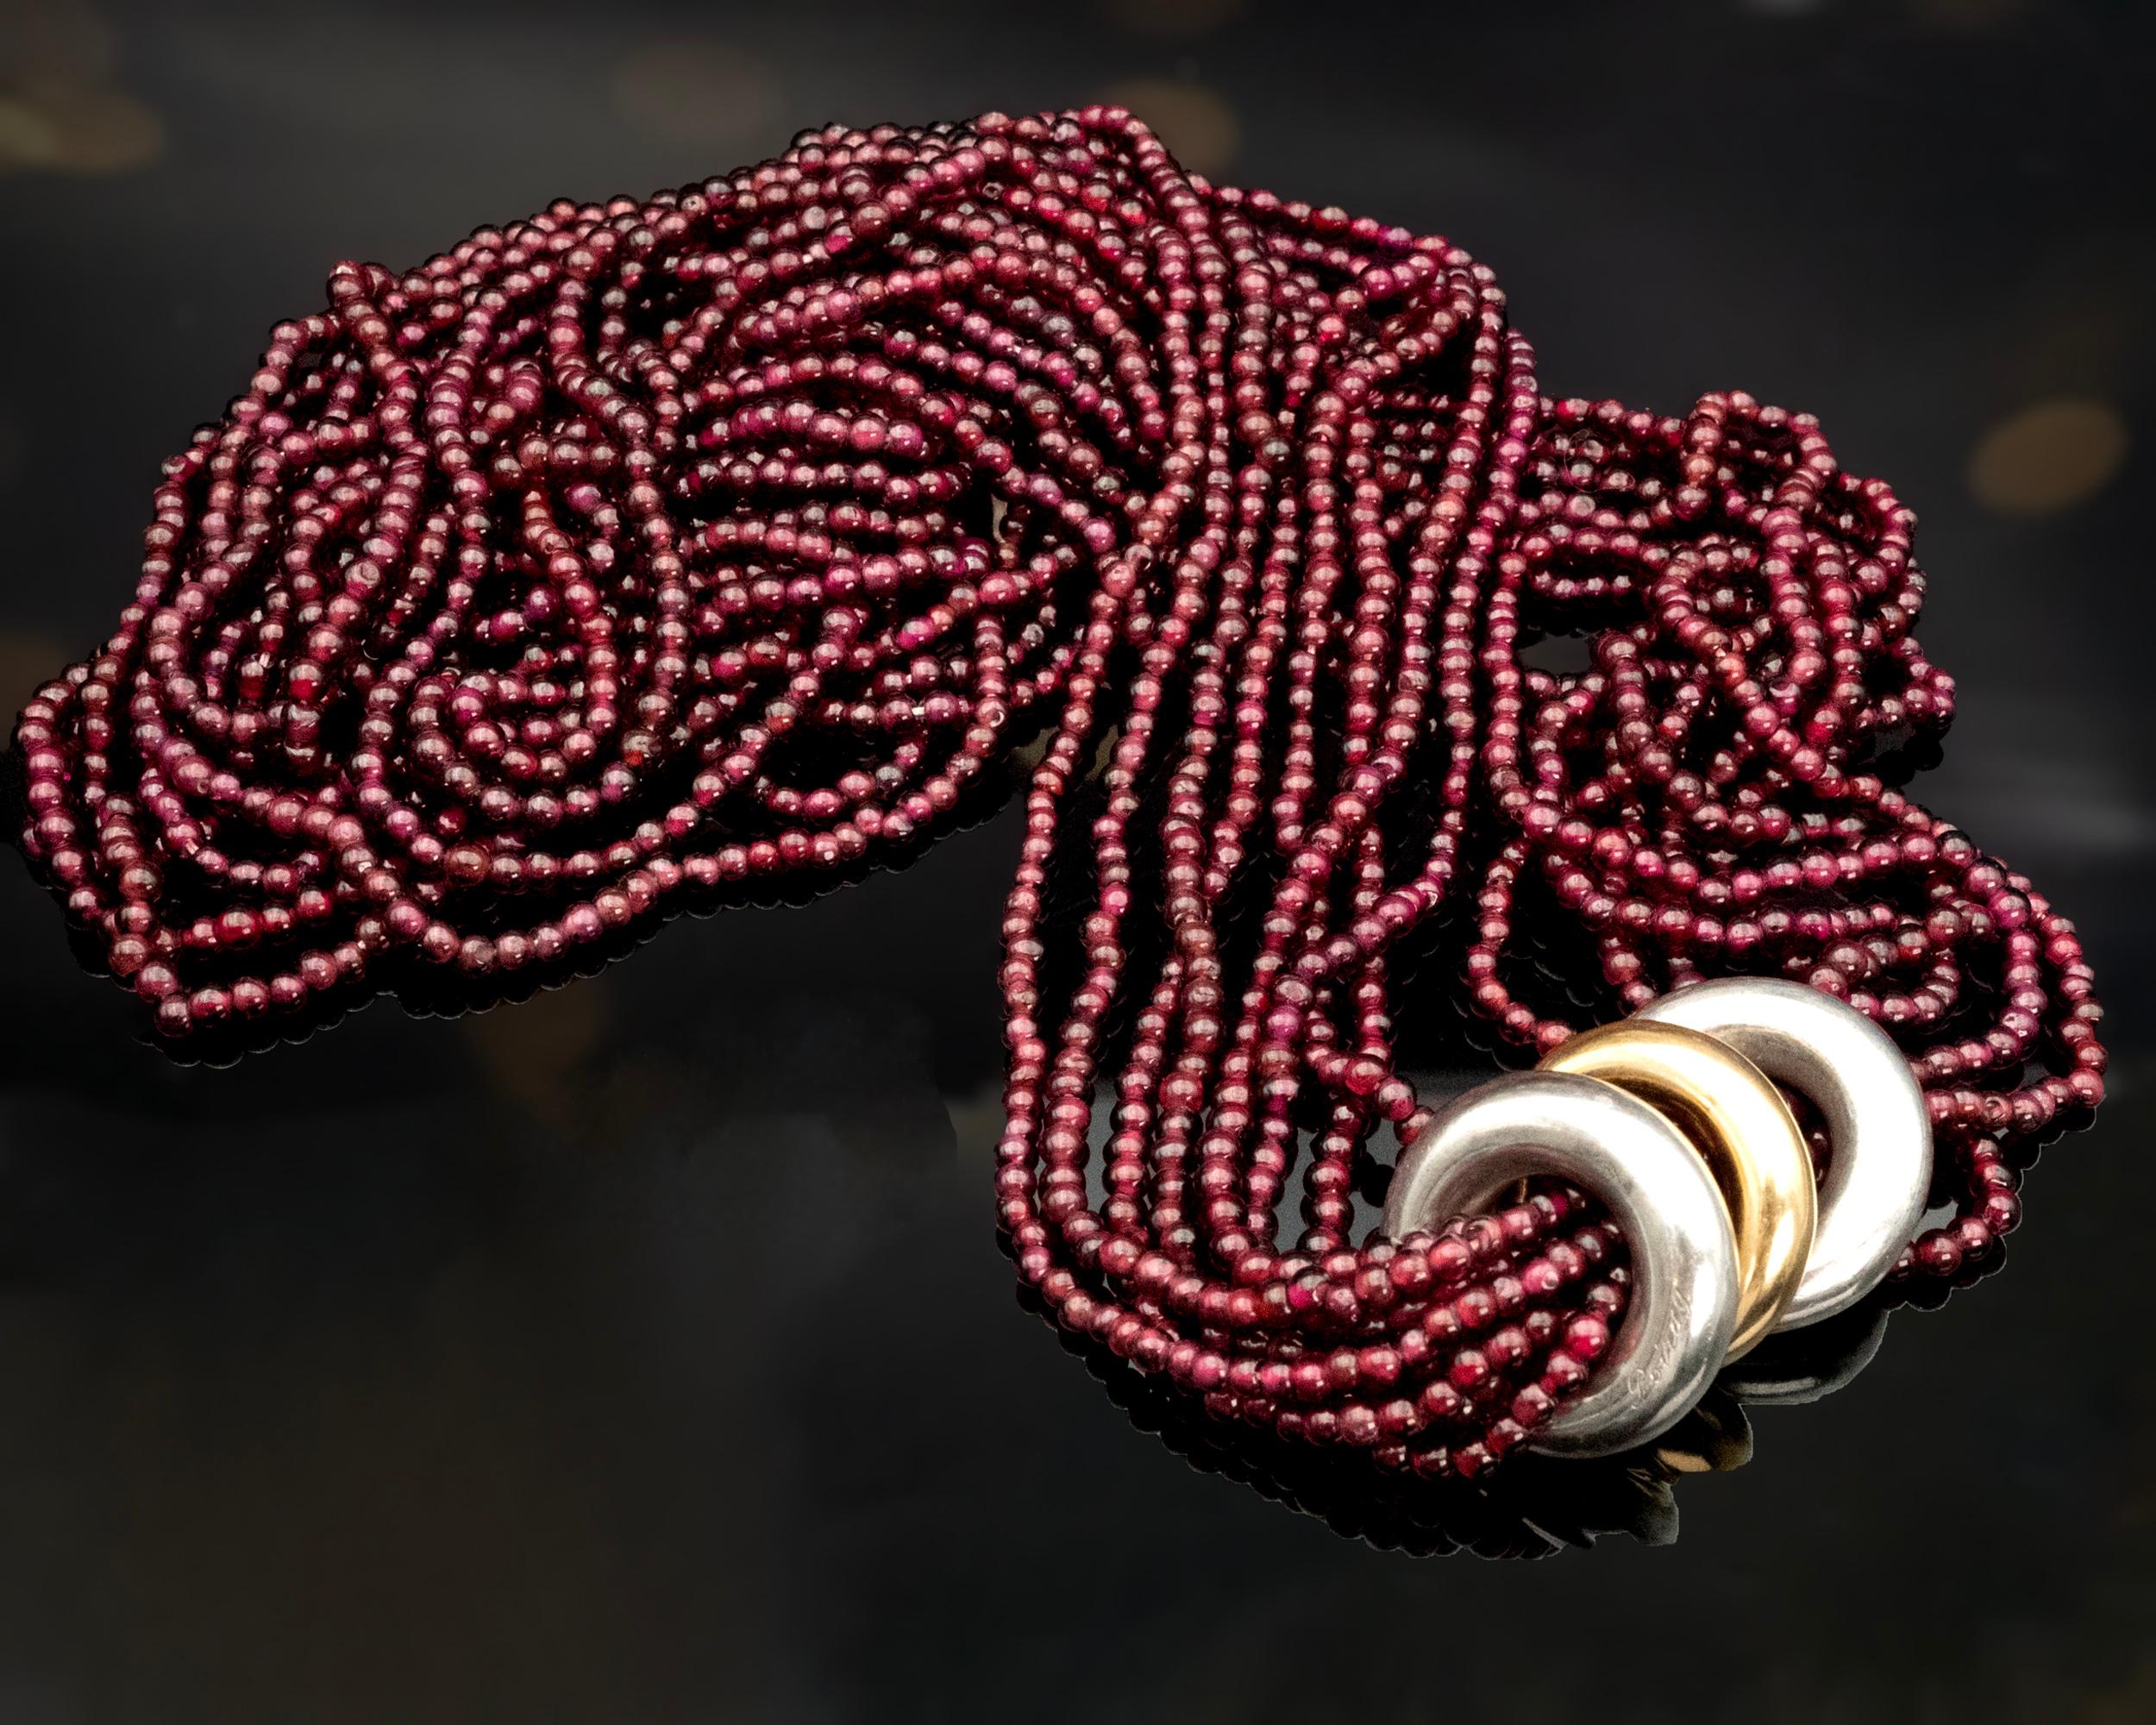 Collier Sautoir multibrins frappant de la célèbre marque de mode Poiray. Ce superbe collier, d'une longueur généreuse de 33 pouces, est composé de huit rangs de perles de grenat vibrantes. Pour ajouter à son attrait, trois lourds anneaux en forme de